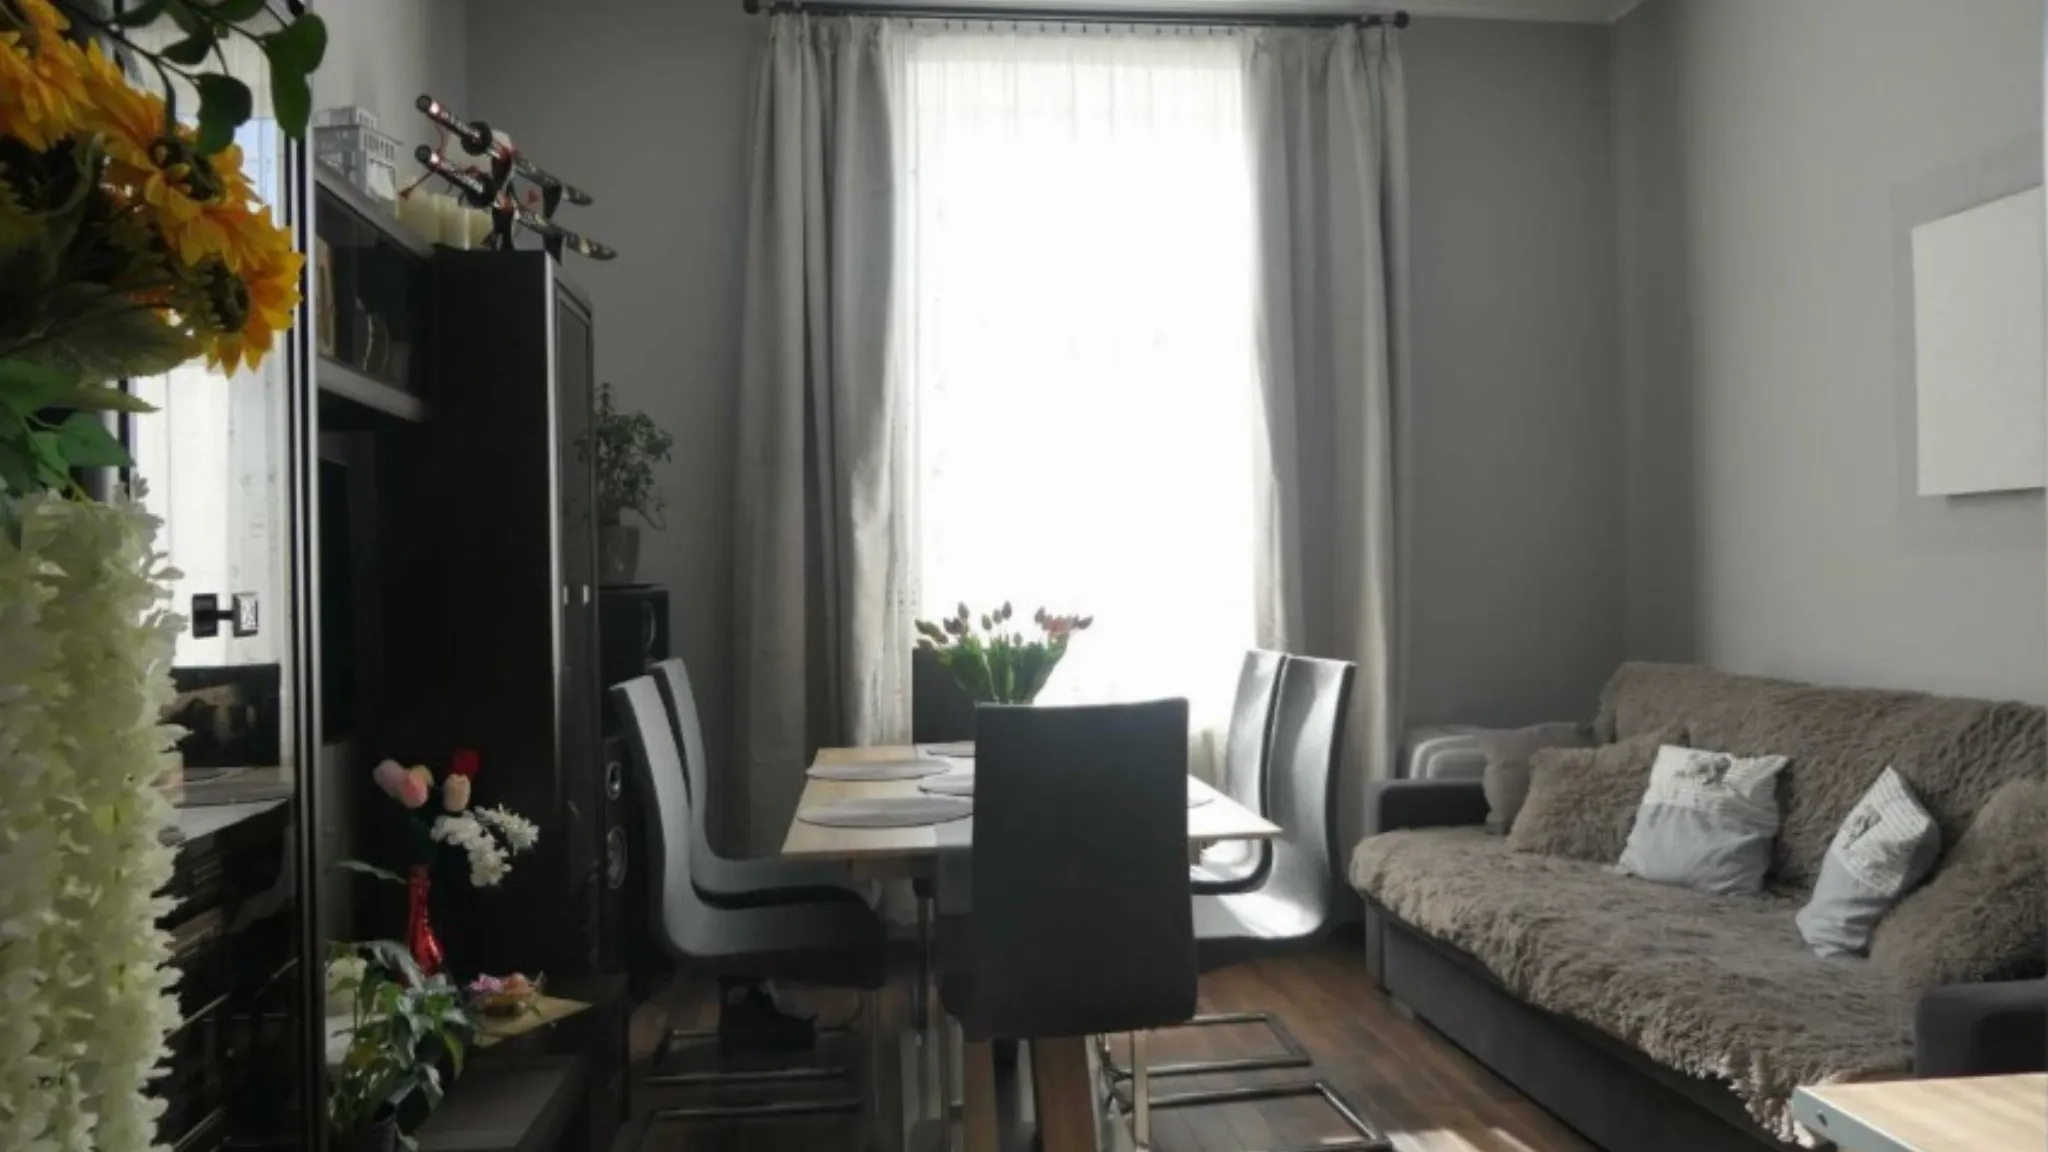 Mieszkanie na sprzedaż, Stare Miasto, 3 pokoje, dwie kuchnie, możliwość podziału - Mieszkanie na sprzedaż Kraków